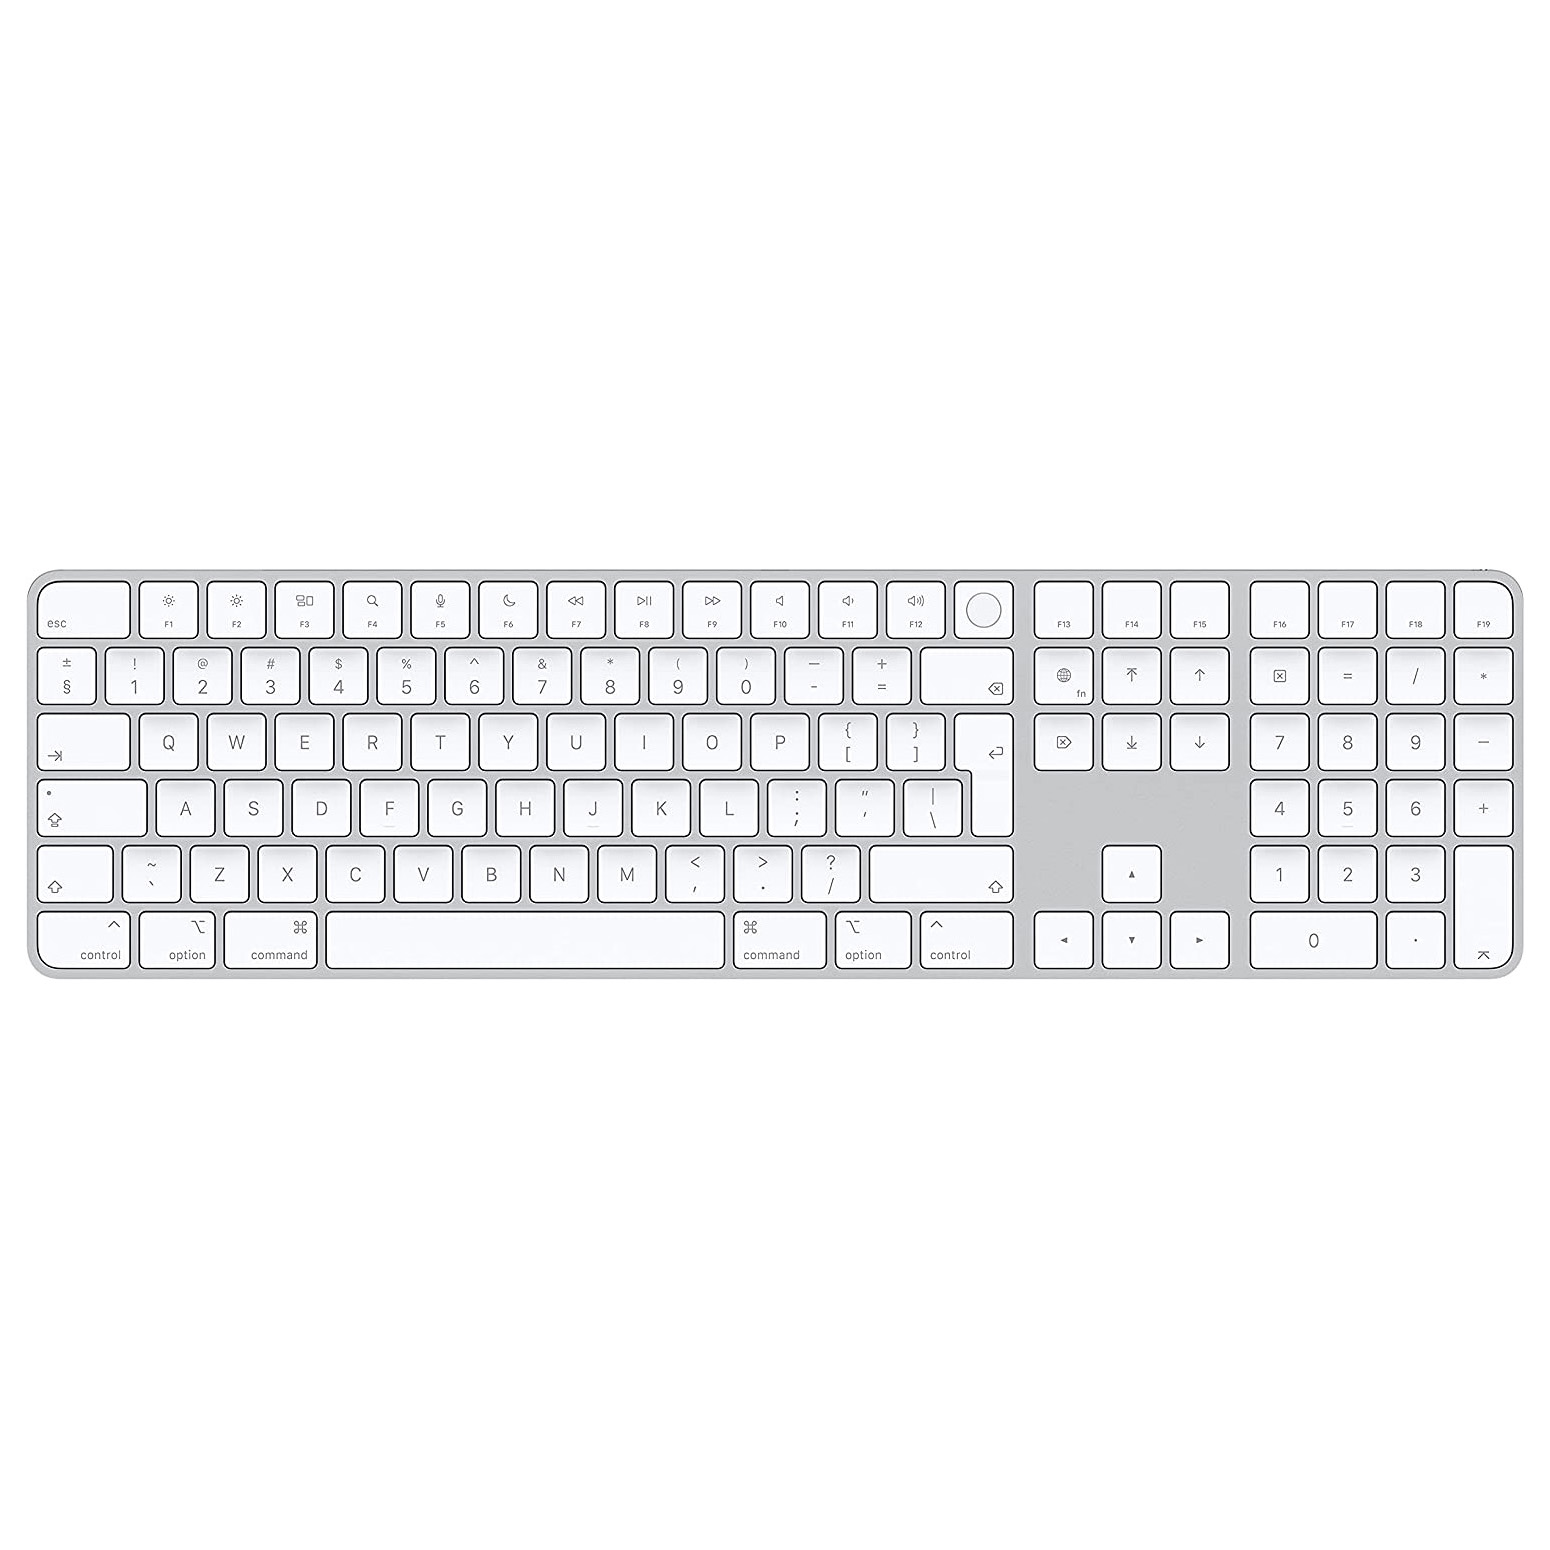 Клавиатура беспроводная Apple Magic Keyboard с Touch ID и цифровой панелью, International English, белые клавиши клавиатура keyboard mp 12p83us 6861 для ноутбука lenovo g500 g510 g700 g505 g505a g700a g710 черная с черной рамкой